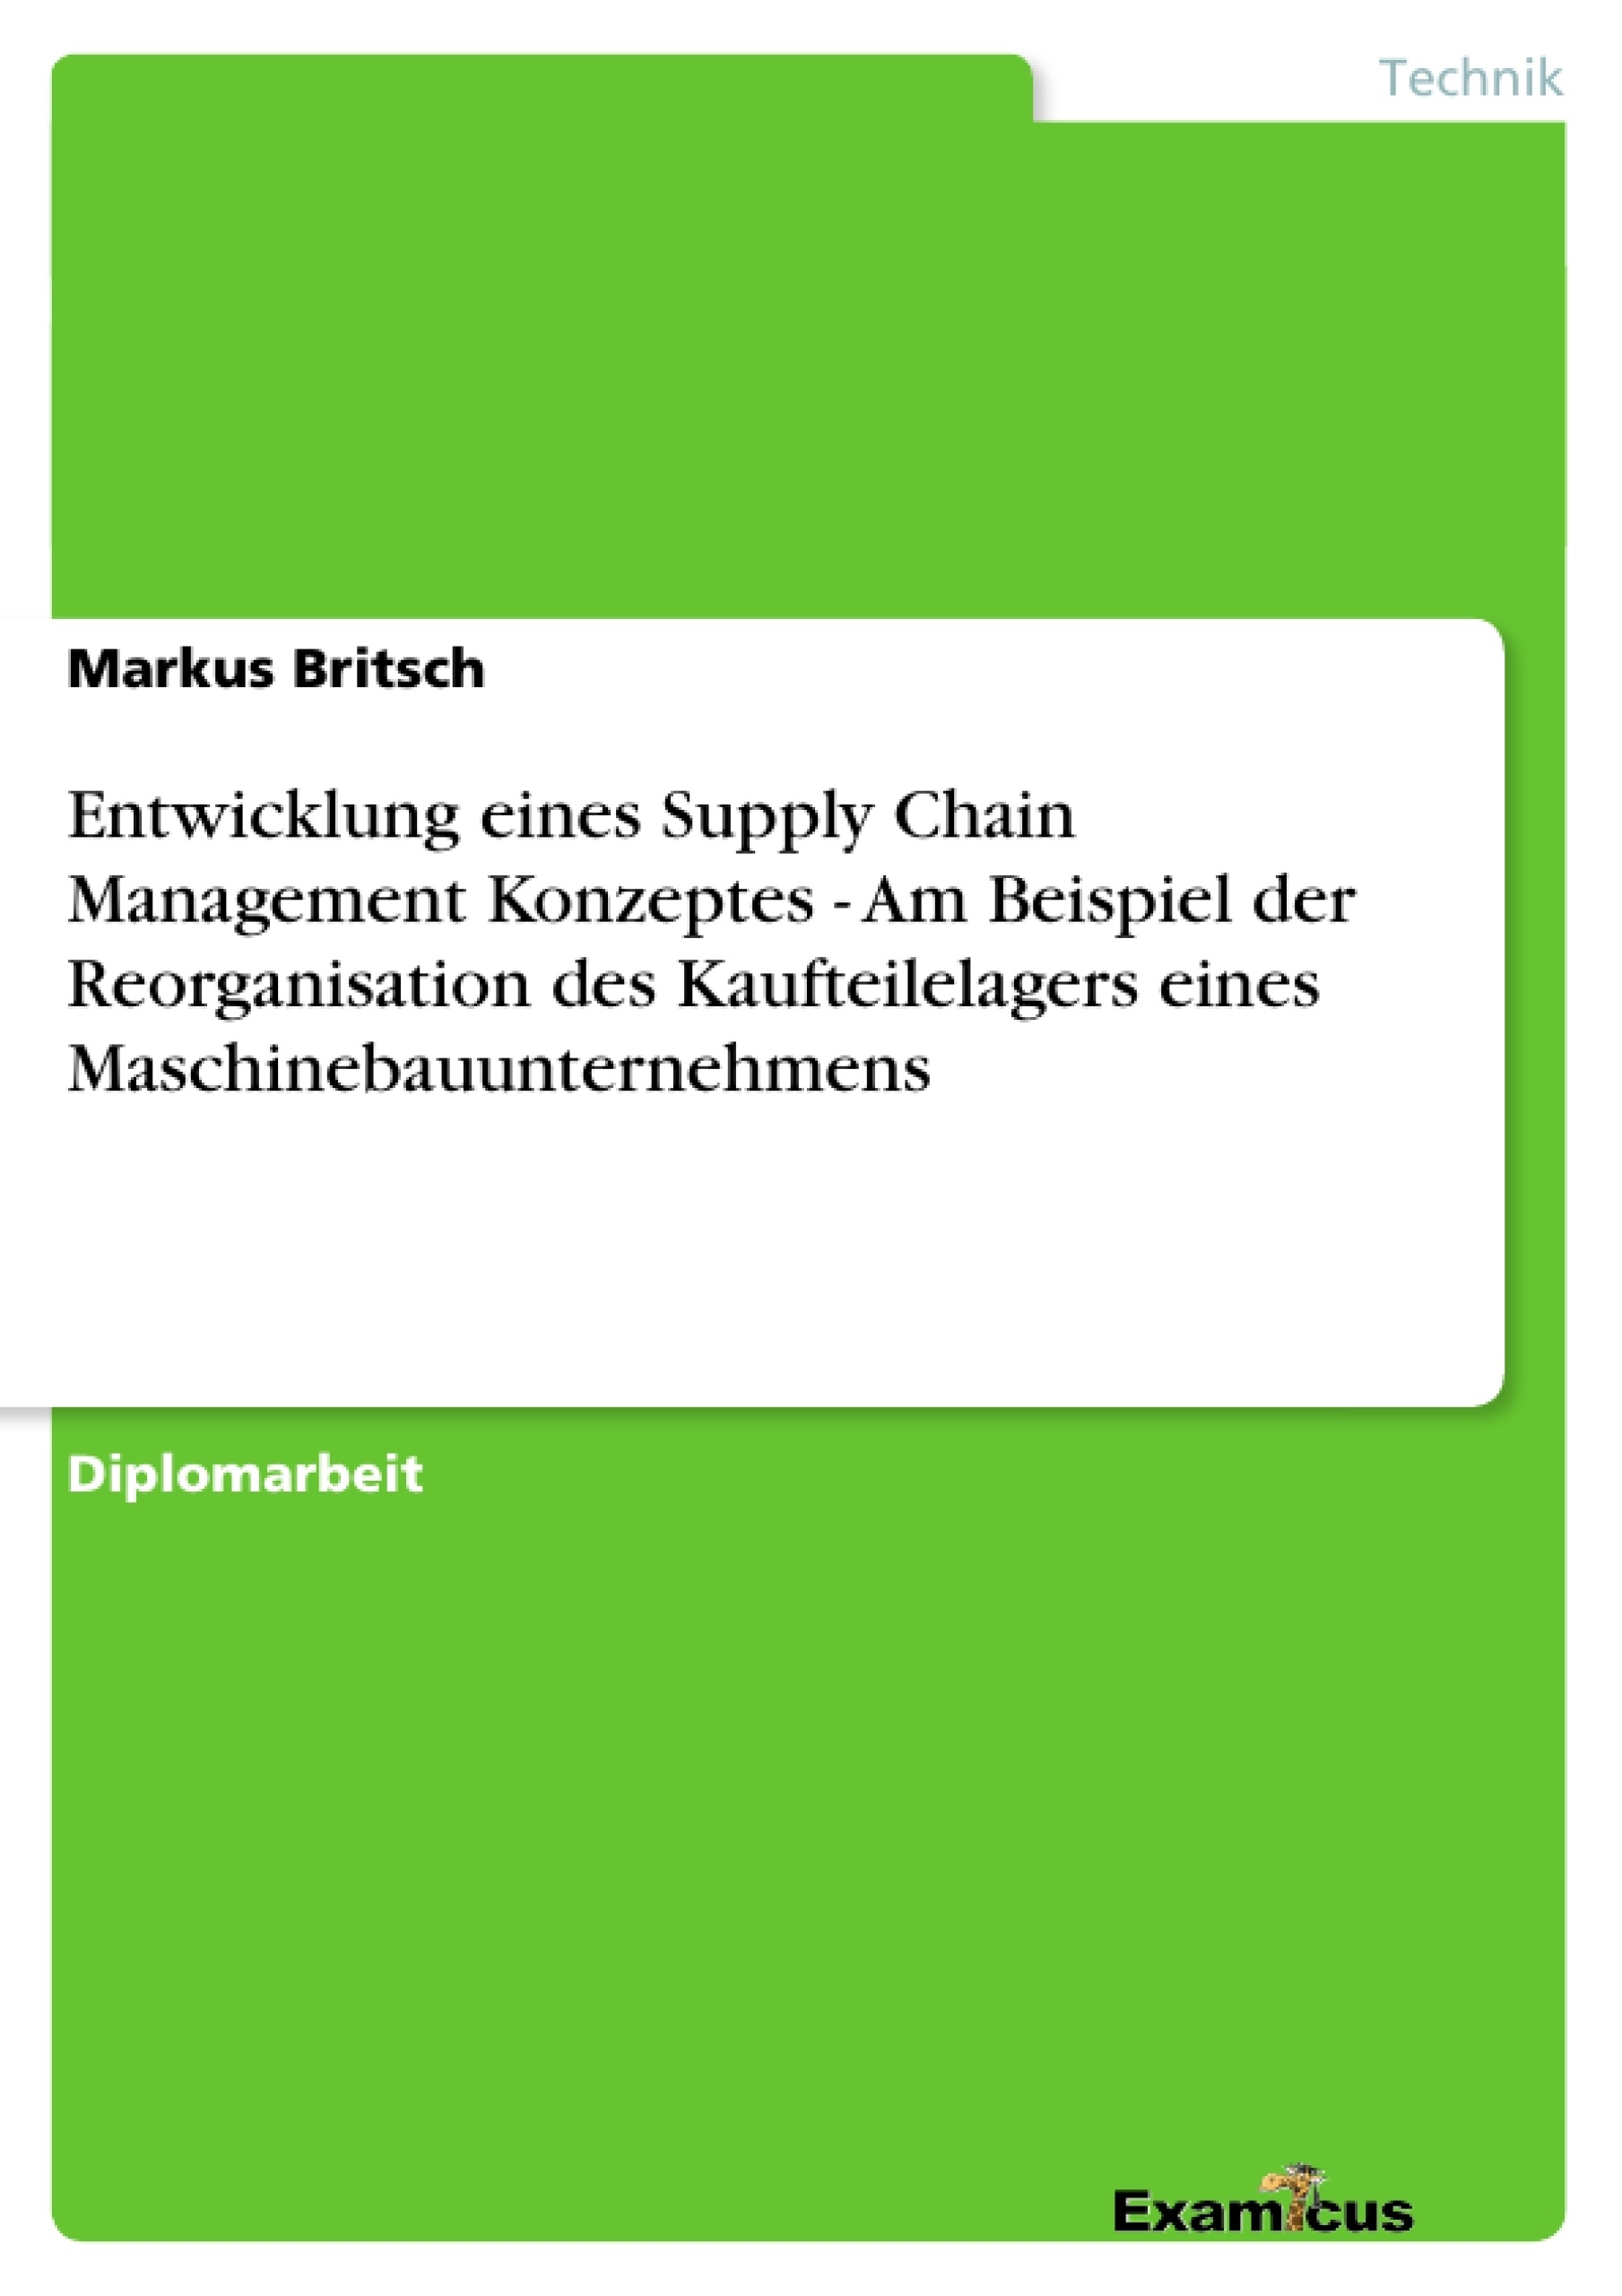 Masterarbeit supply chain management